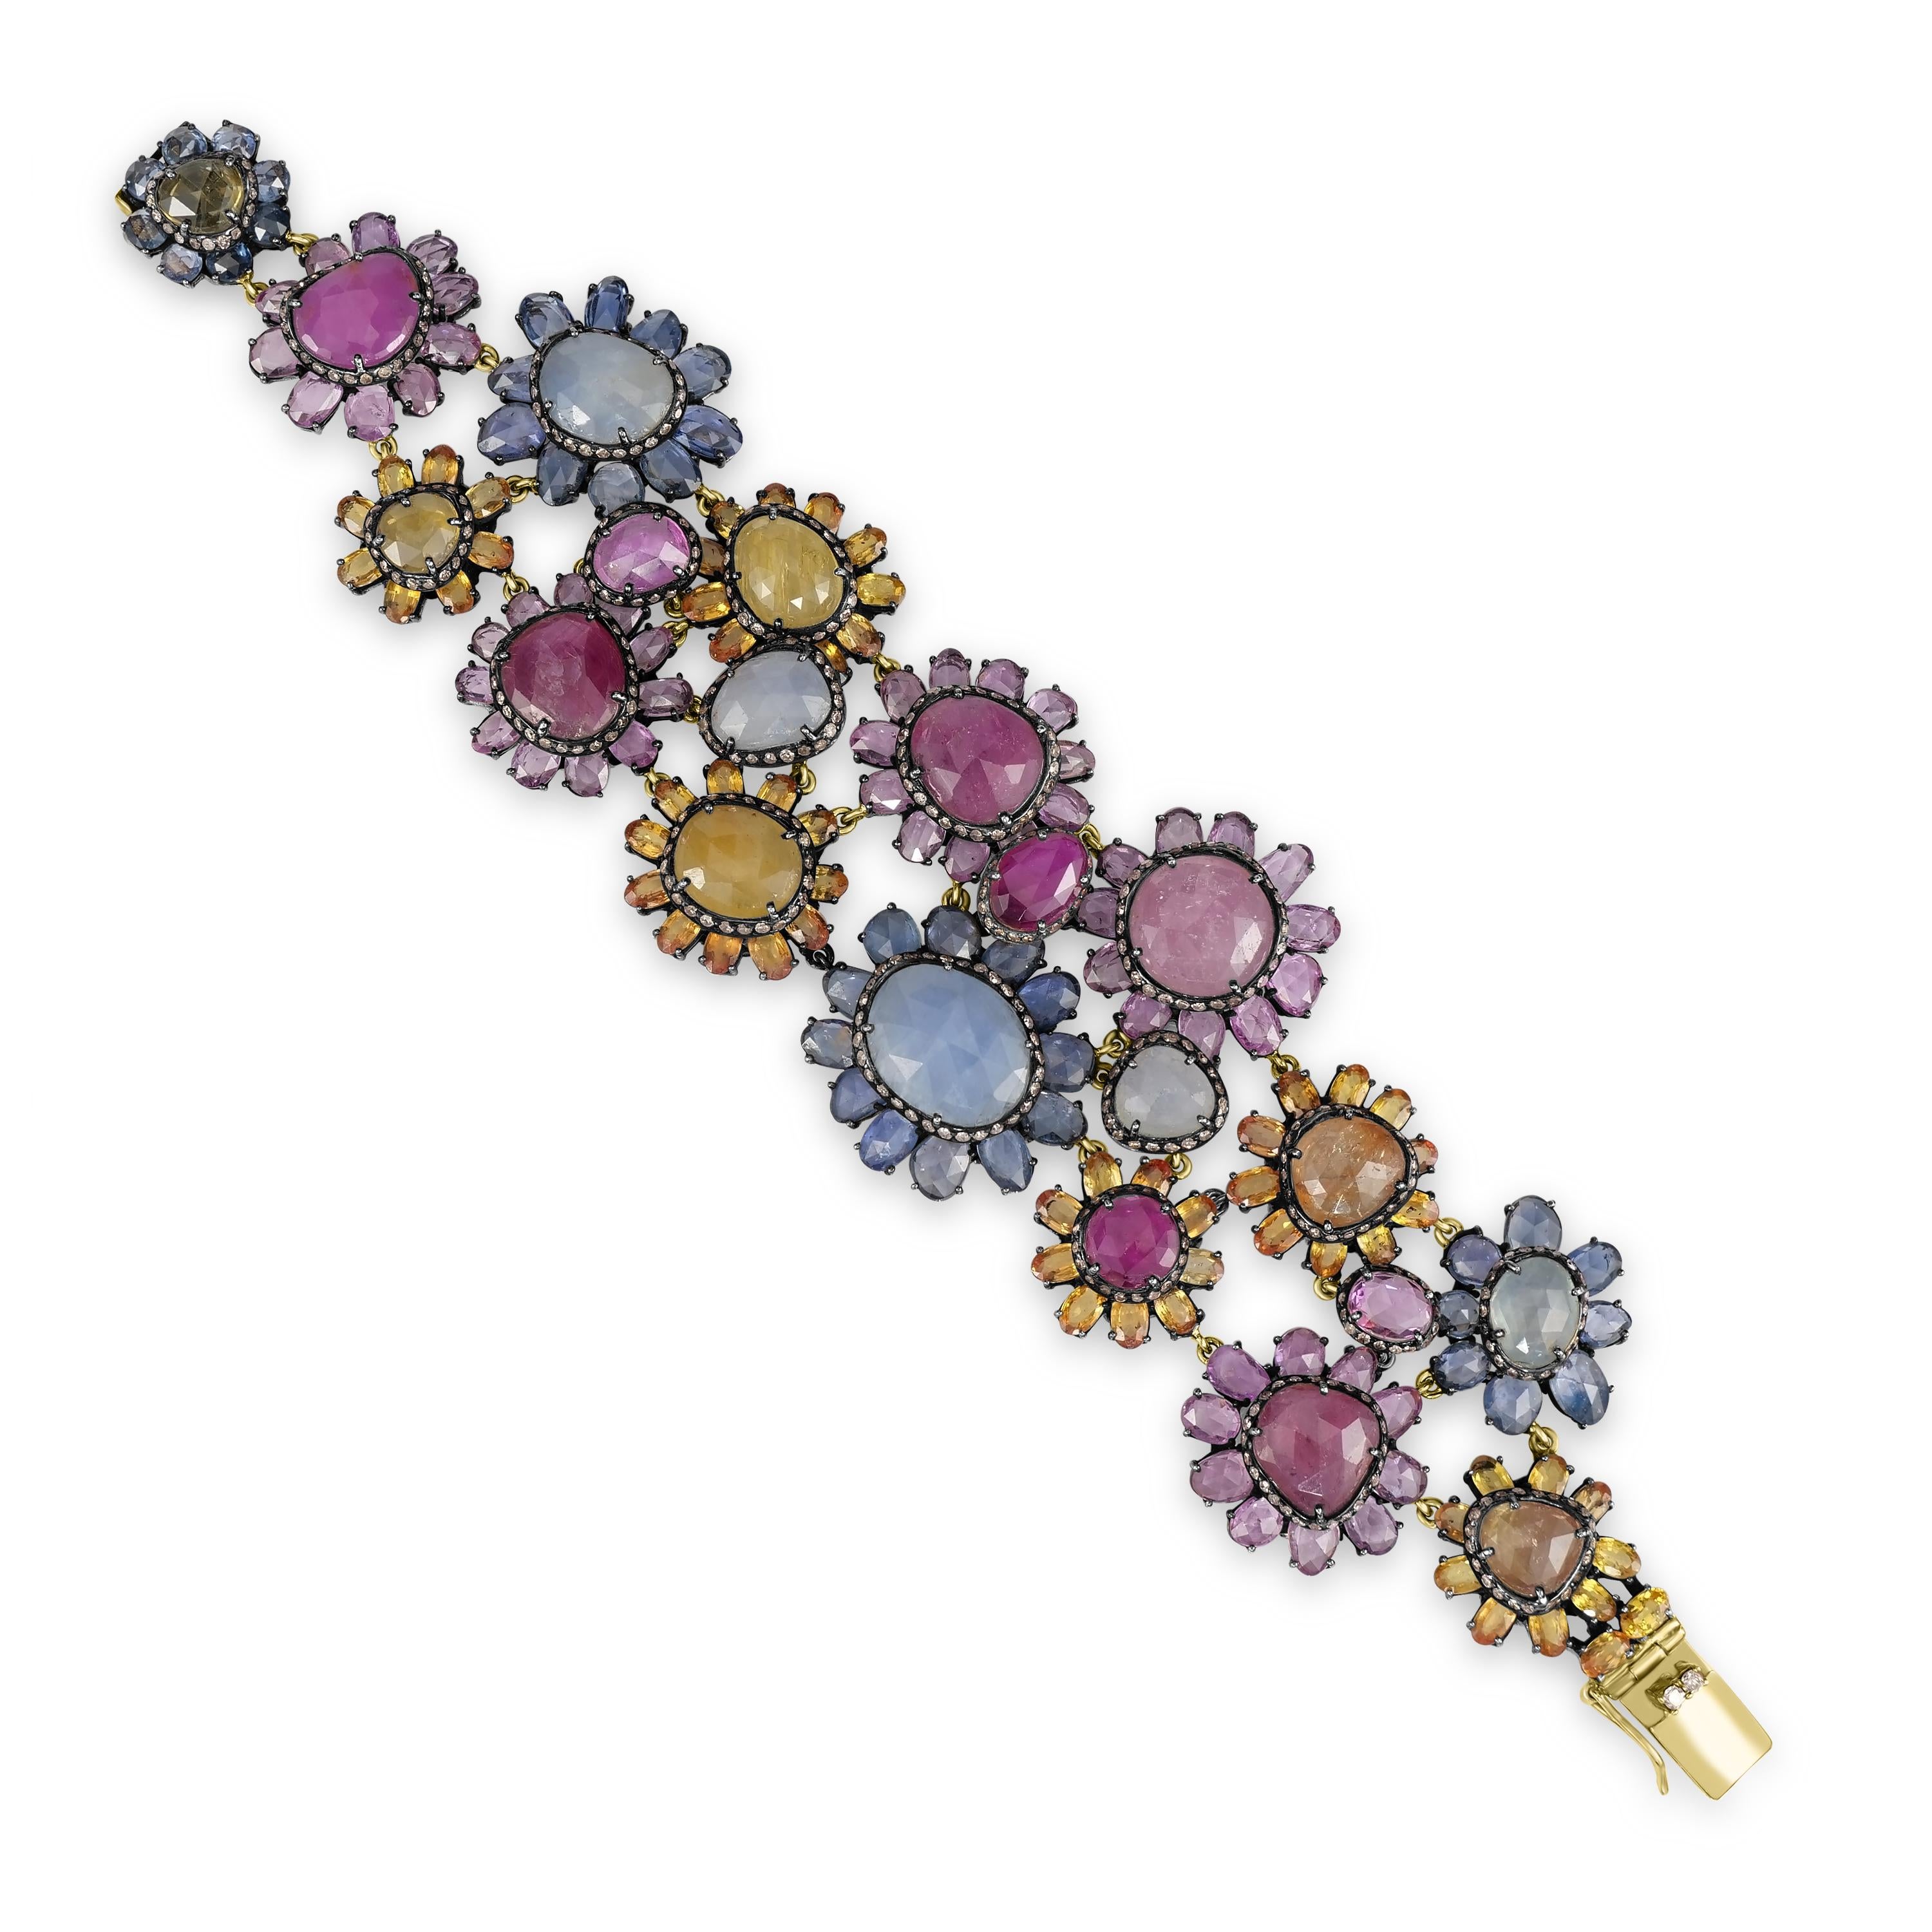 Wir stellen Ihnen unseren atemberaubenden viktorianischen 110 Cttw vor. Saphir, Rubin und Diamant Gliederarmband, ein wahres Meisterwerk der Eleganz und Raffinesse.

Dieses atemberaubende Armband zeigt eine faszinierende Kollektion von